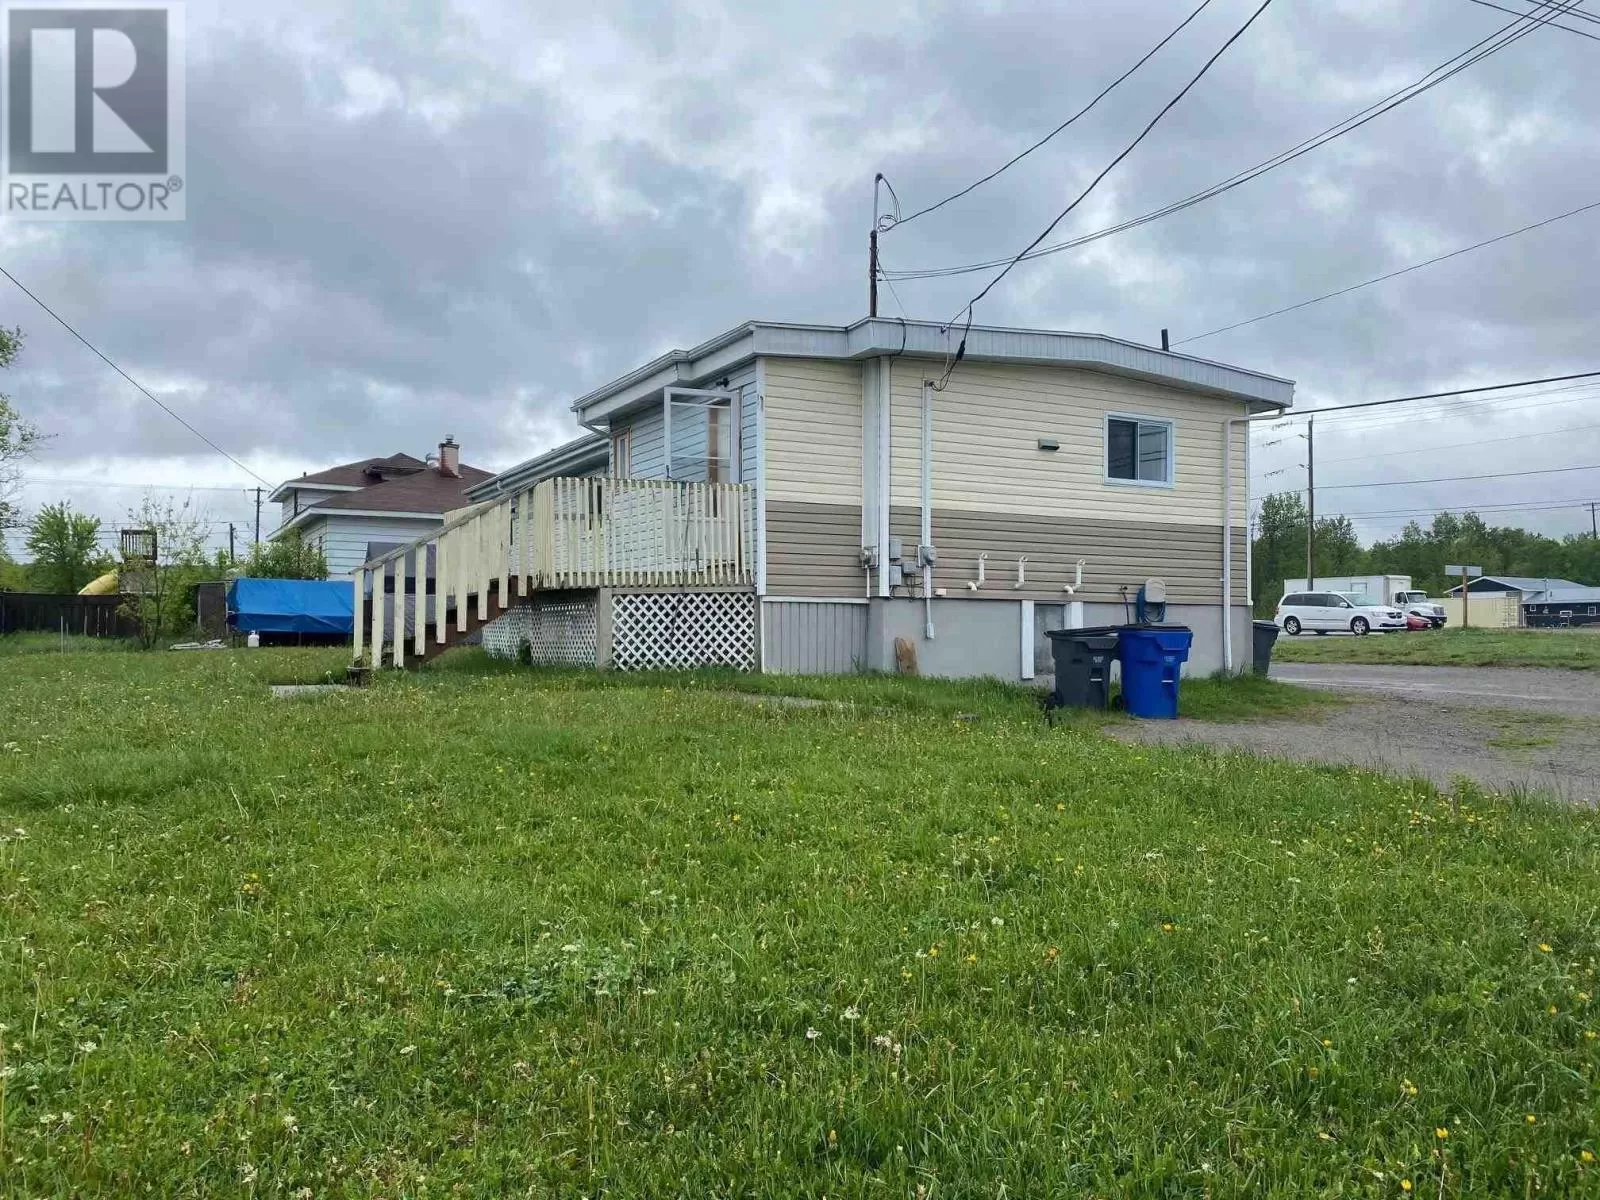 Multi-Family for rent: 19 Rorke St, Temiskaming Shores, Ontario P0J 1K0